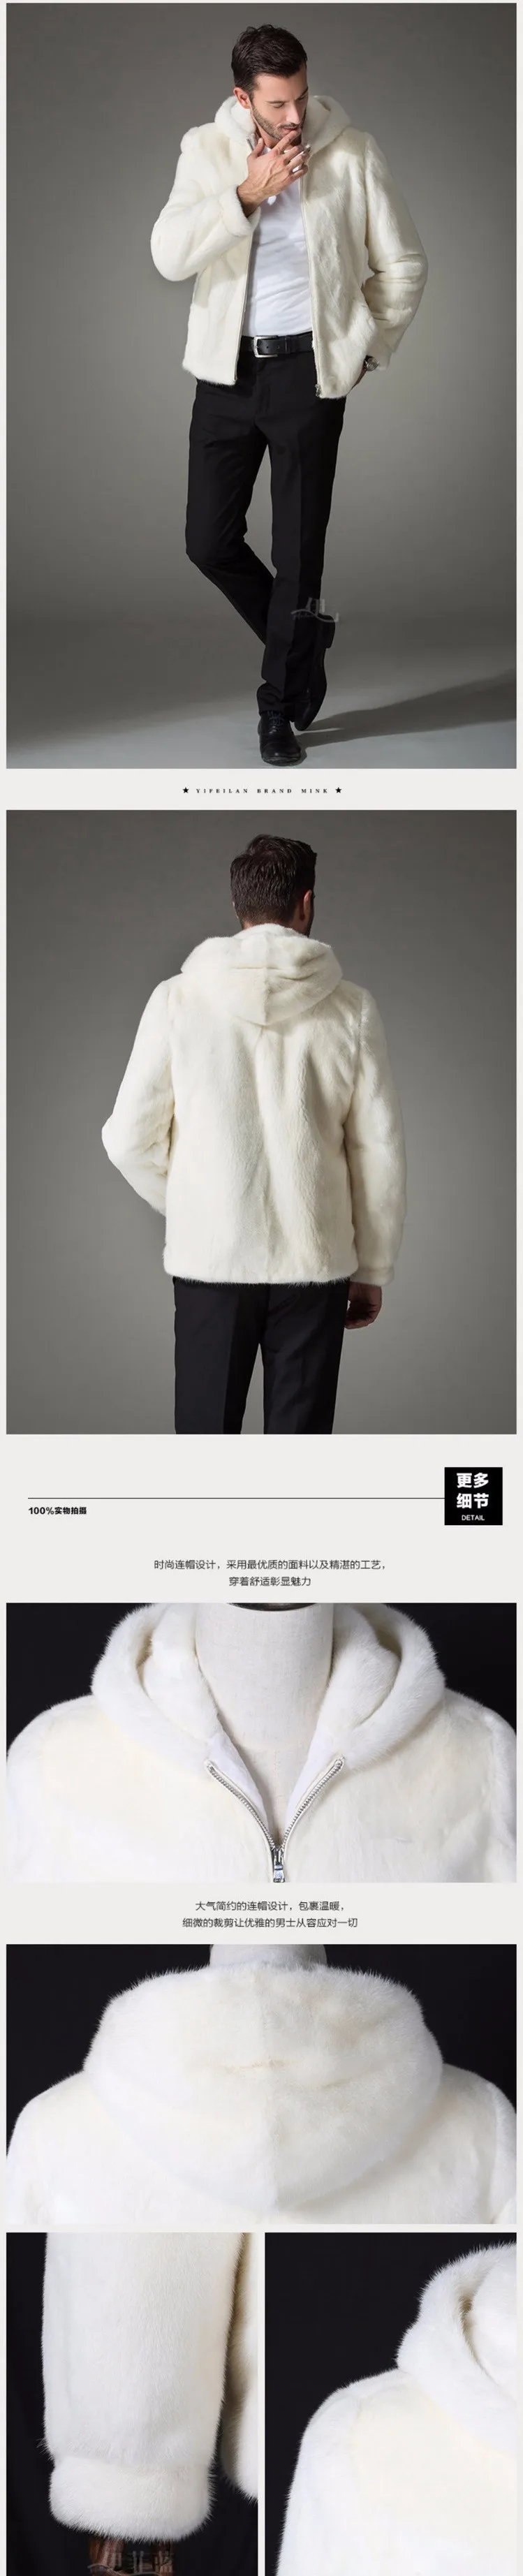 Зимнее мужское белое меховое пальто одежда имитация куницы пальто для мужчин с капюшоном куртка мужская одежда норковая меховая верхняя одежда